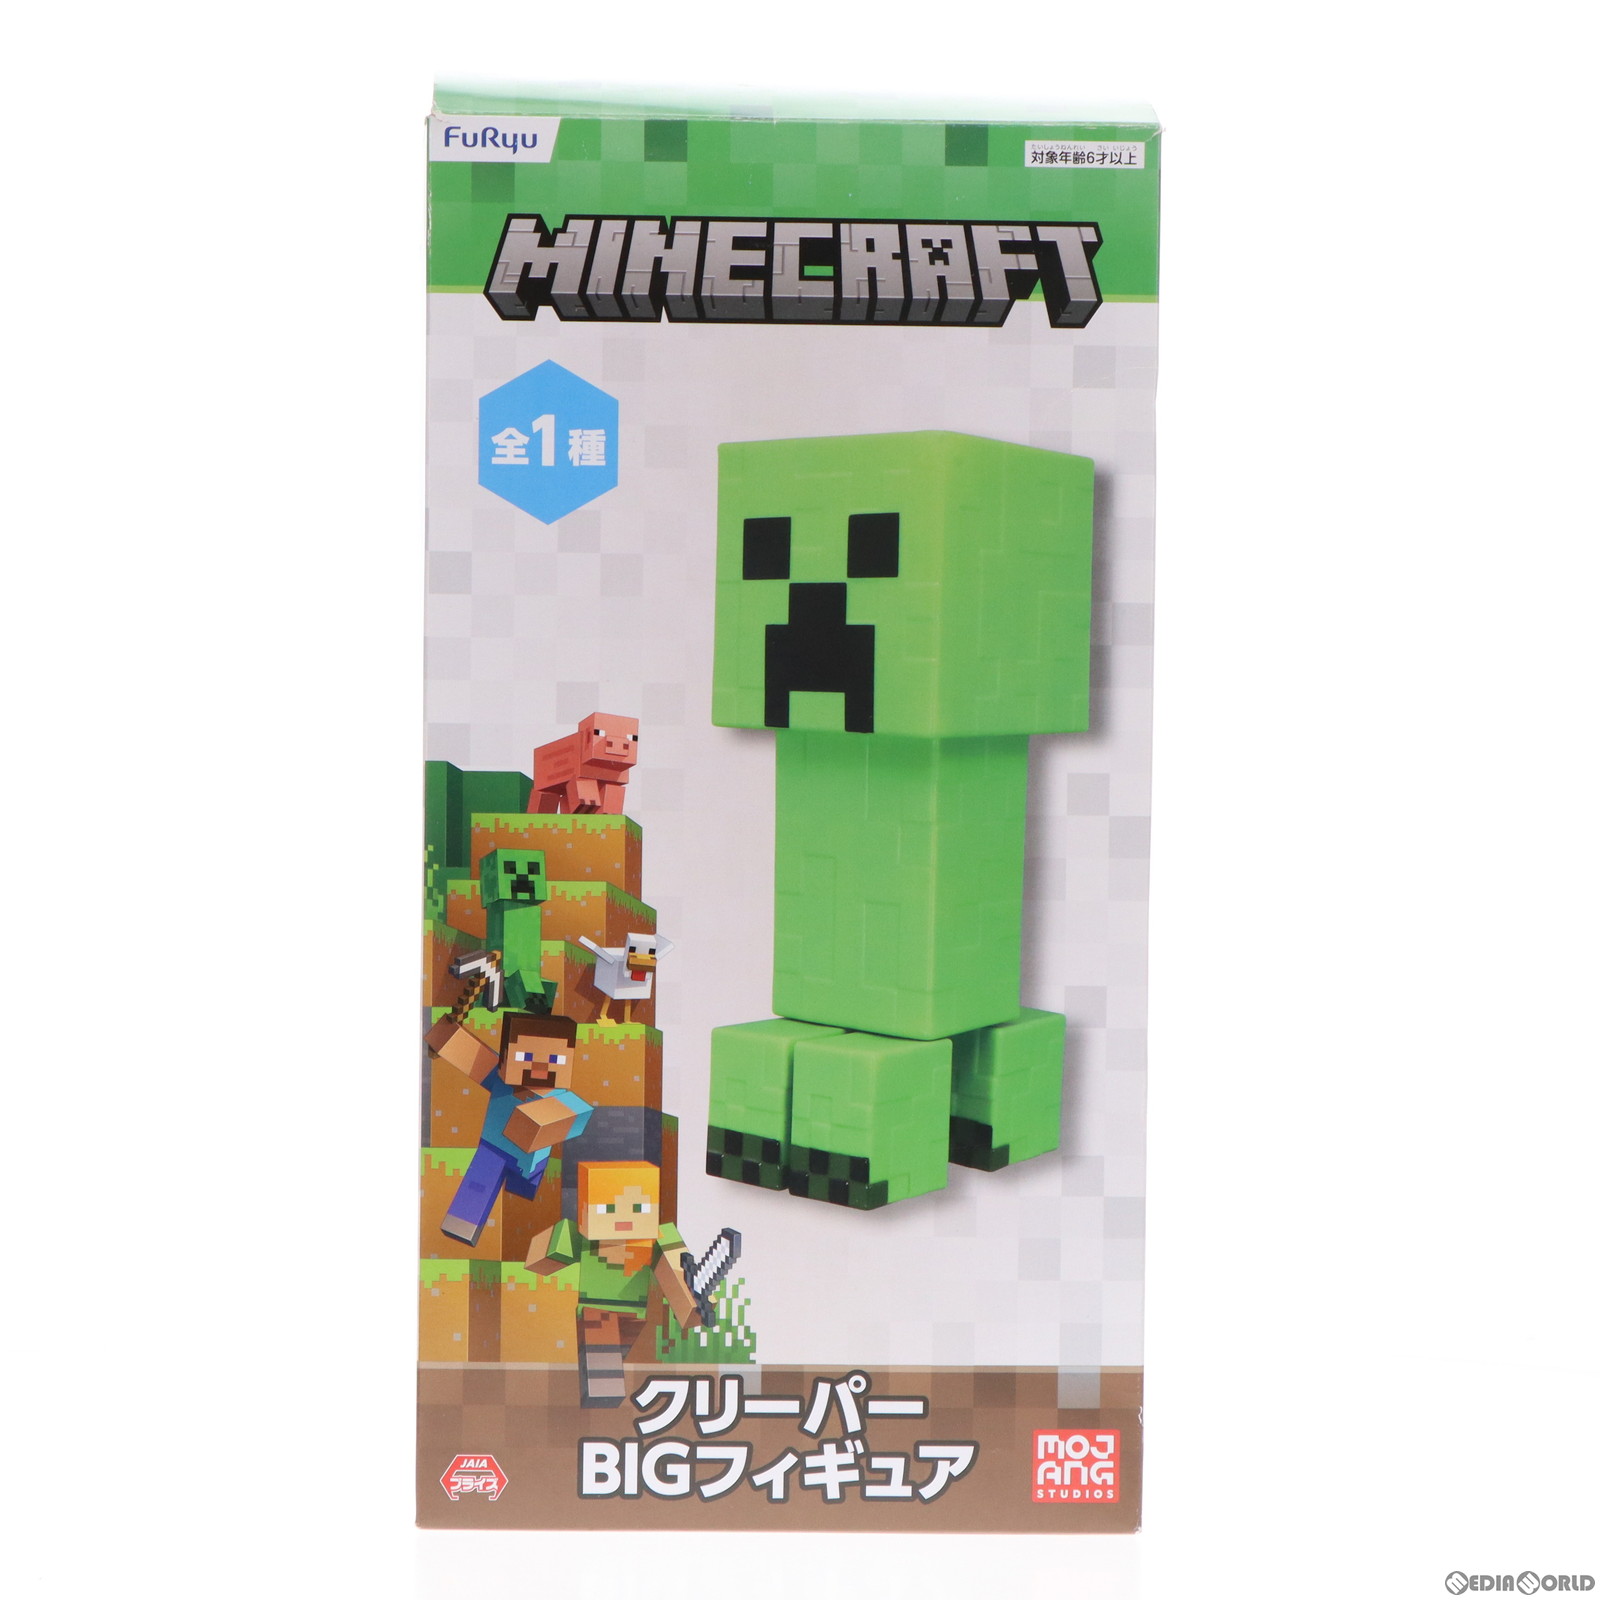 【中古即納】[FIG]クリーパー BIGフィギュア Minecraft(マインクラフト) プライズ(AMU-PRZ14893) フリュー(20230531)